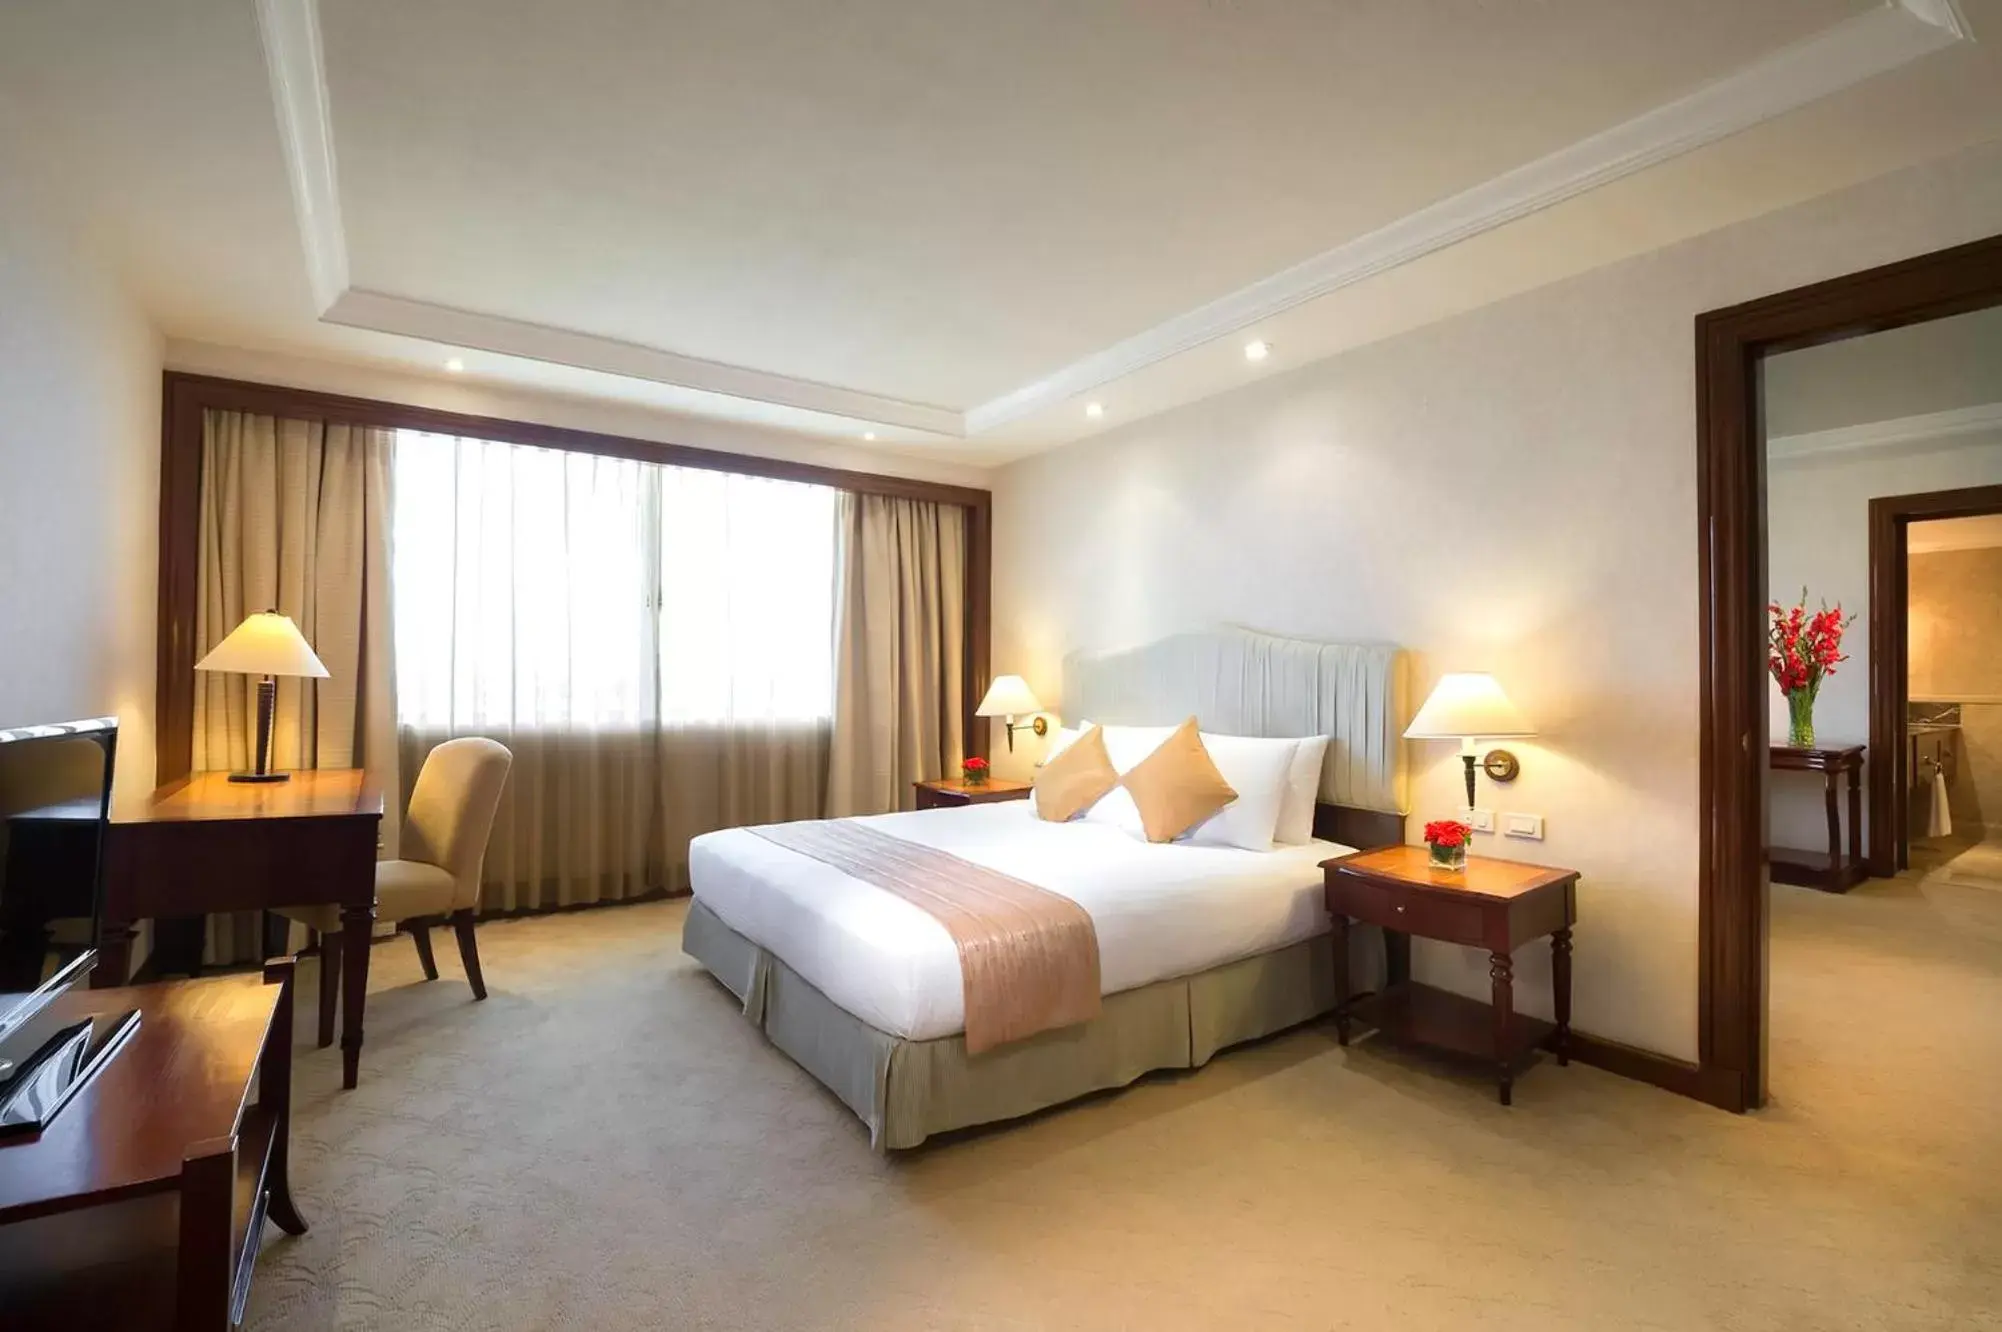 Bedroom, Bed in Marco Polo Plaza Cebu